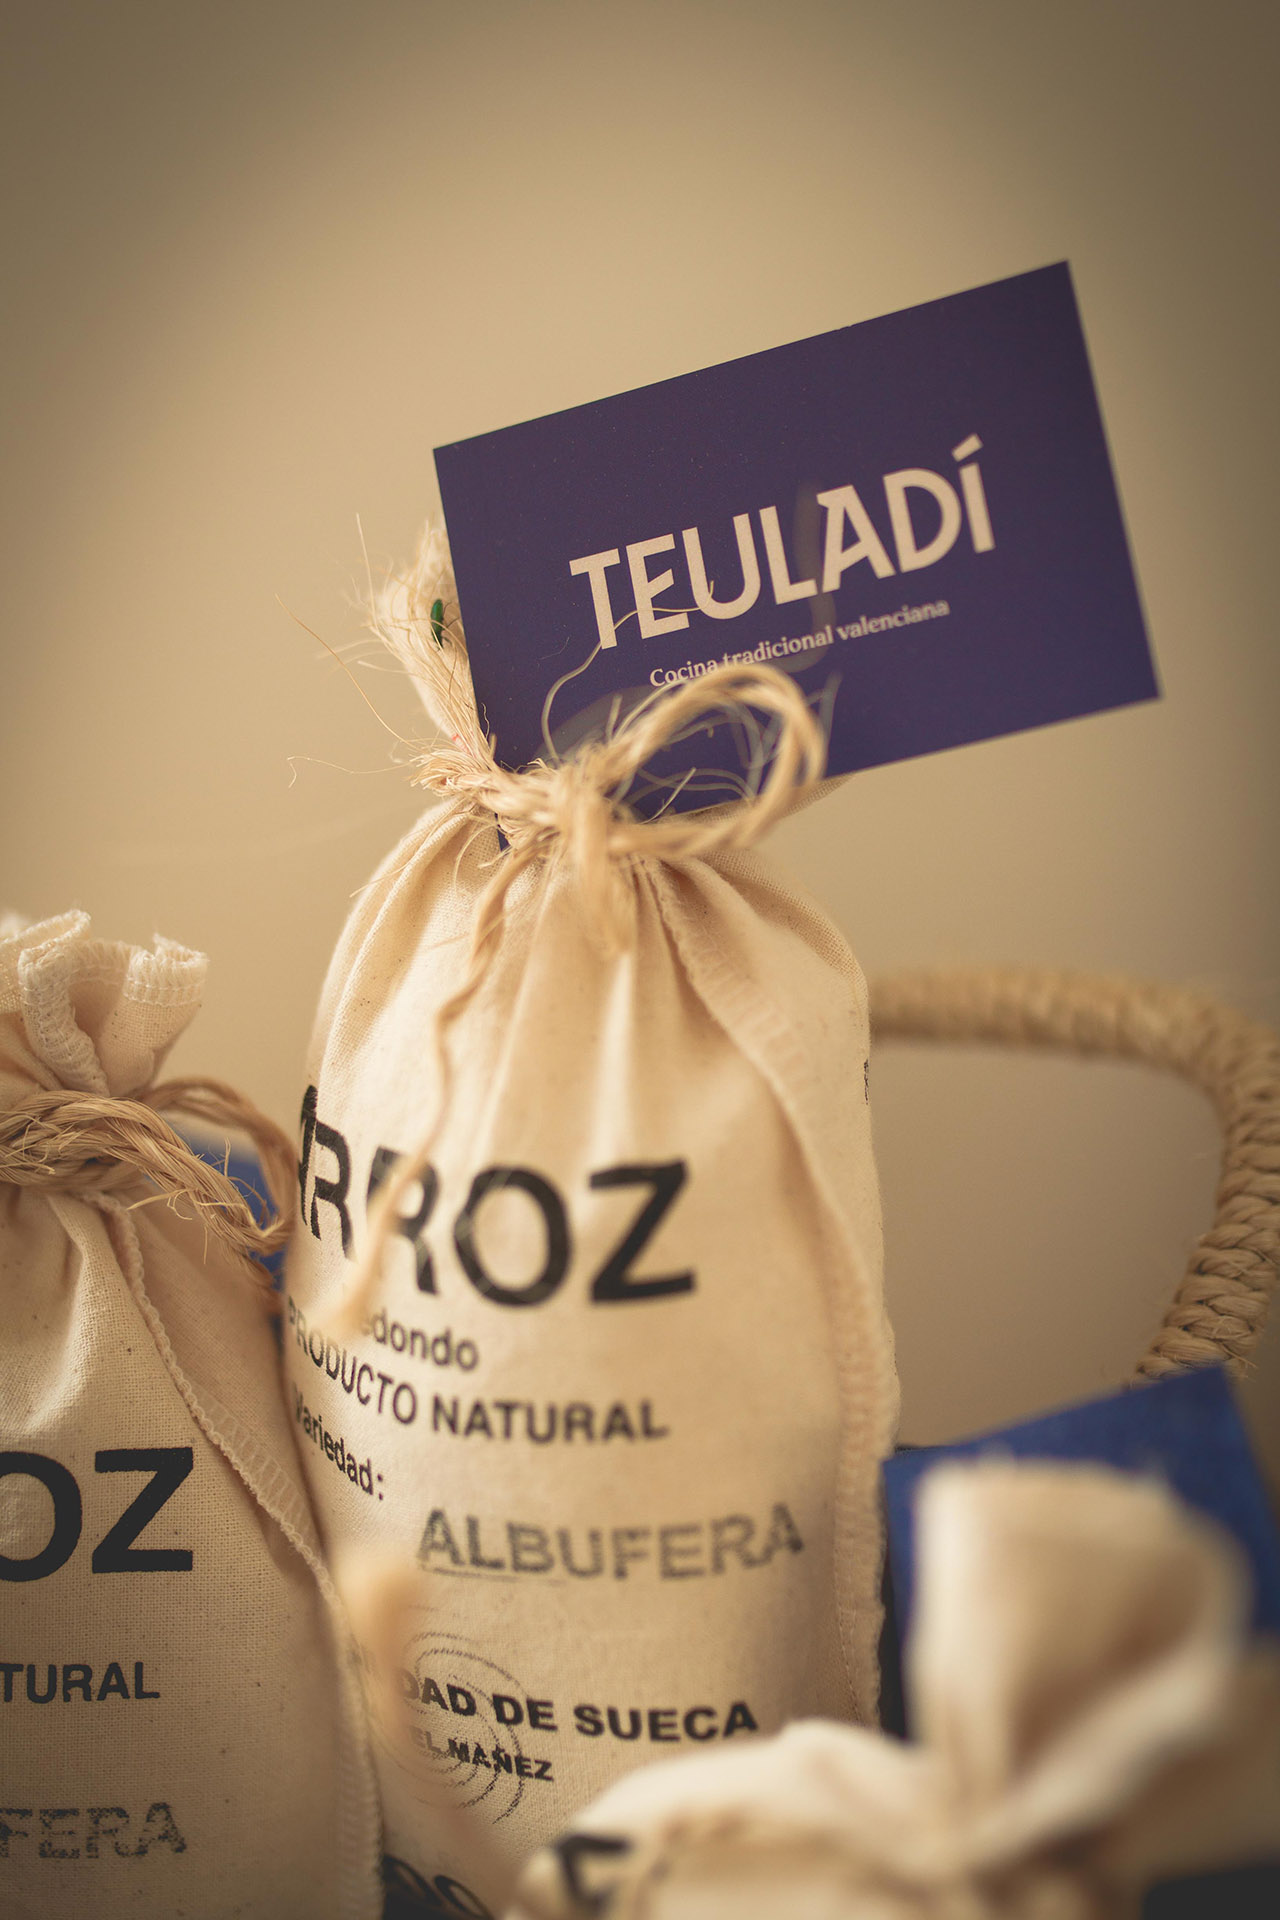 Teuladi - Branding